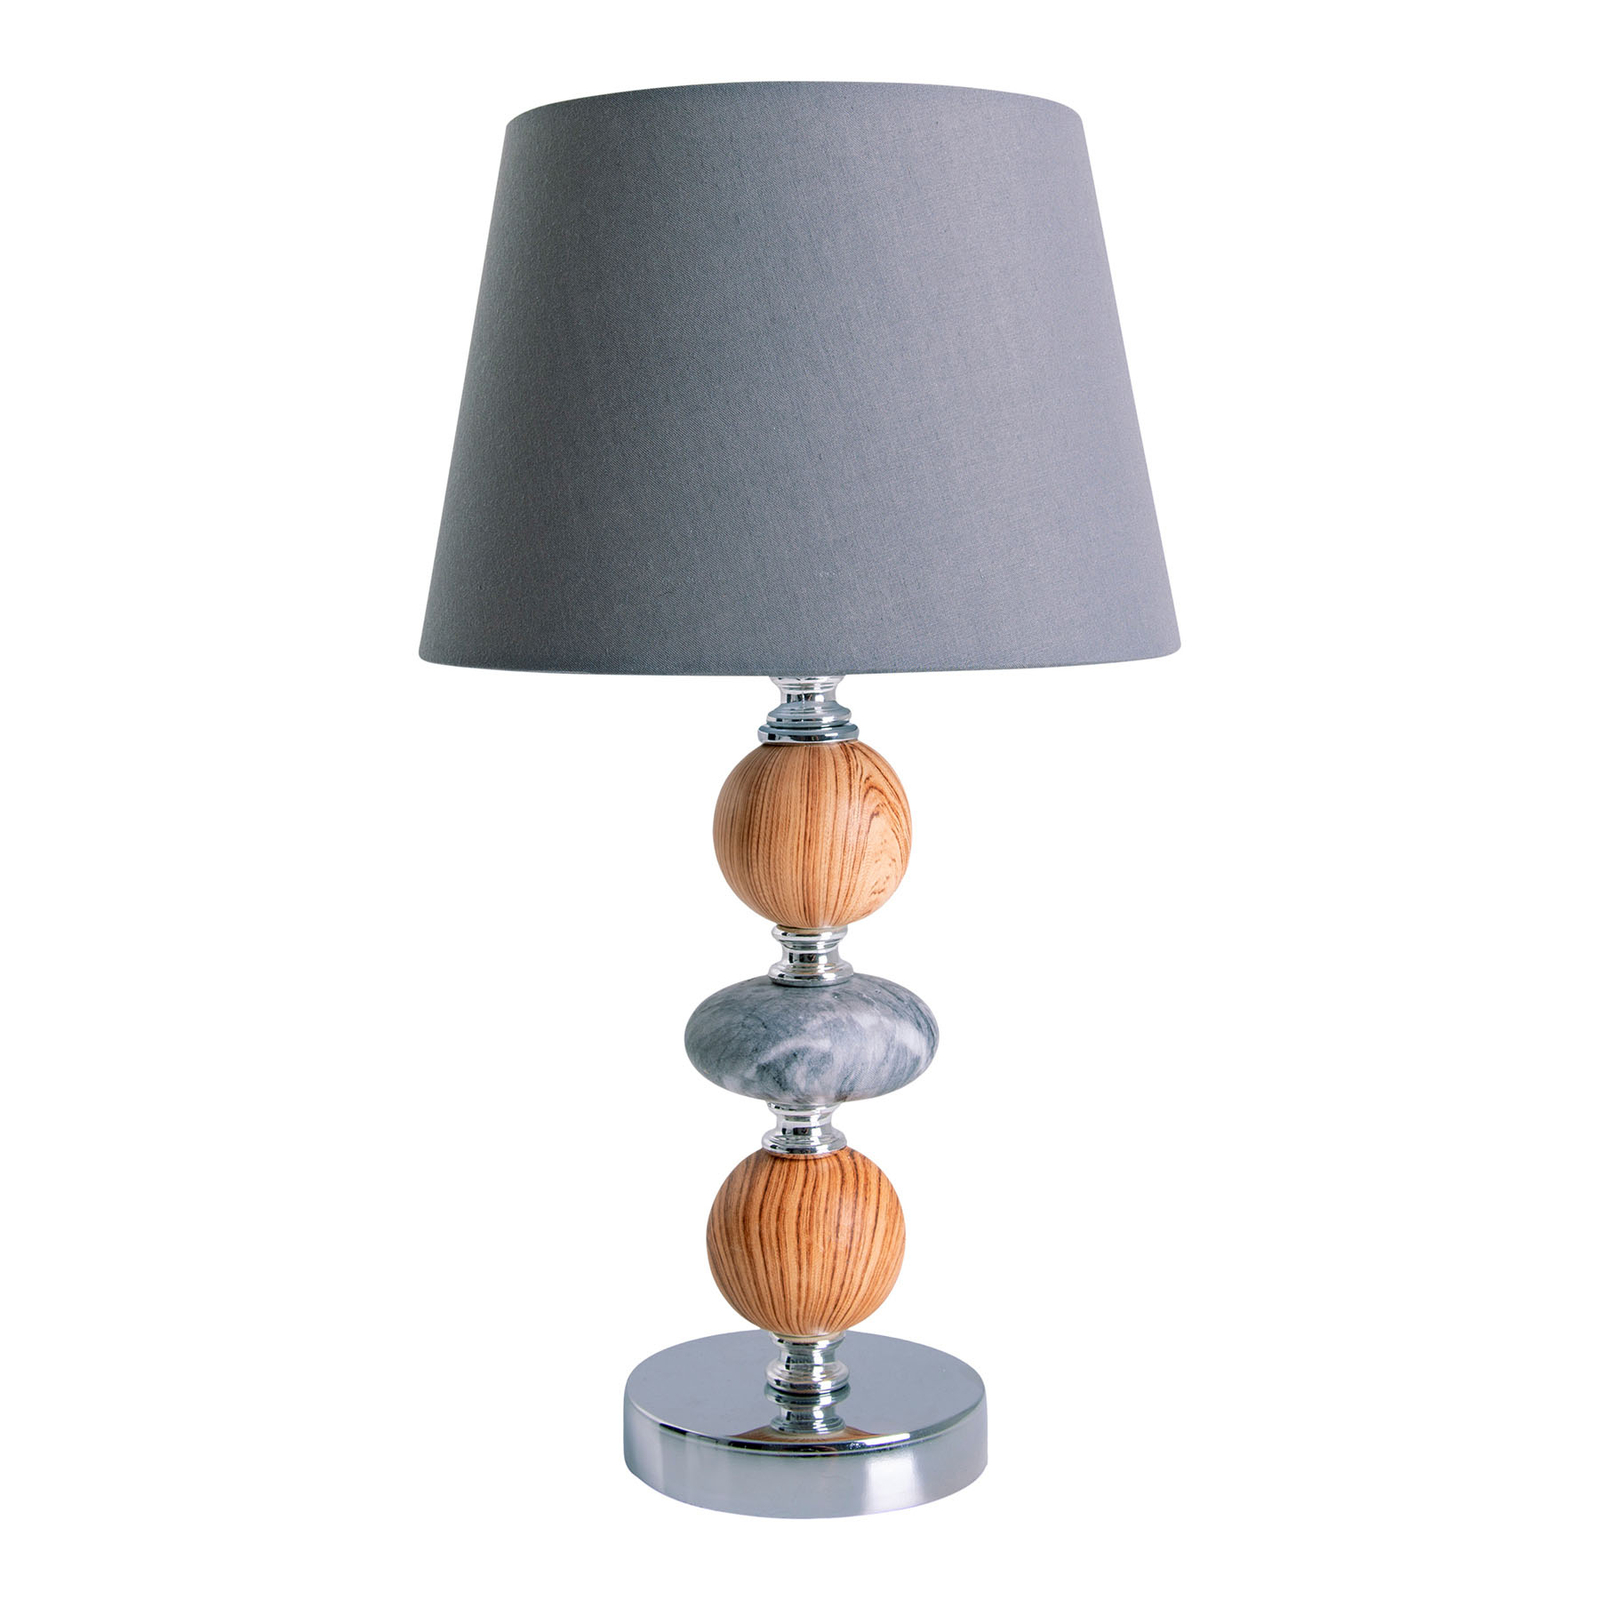 Araga asztali lámpa, szürke/króm/fa színű